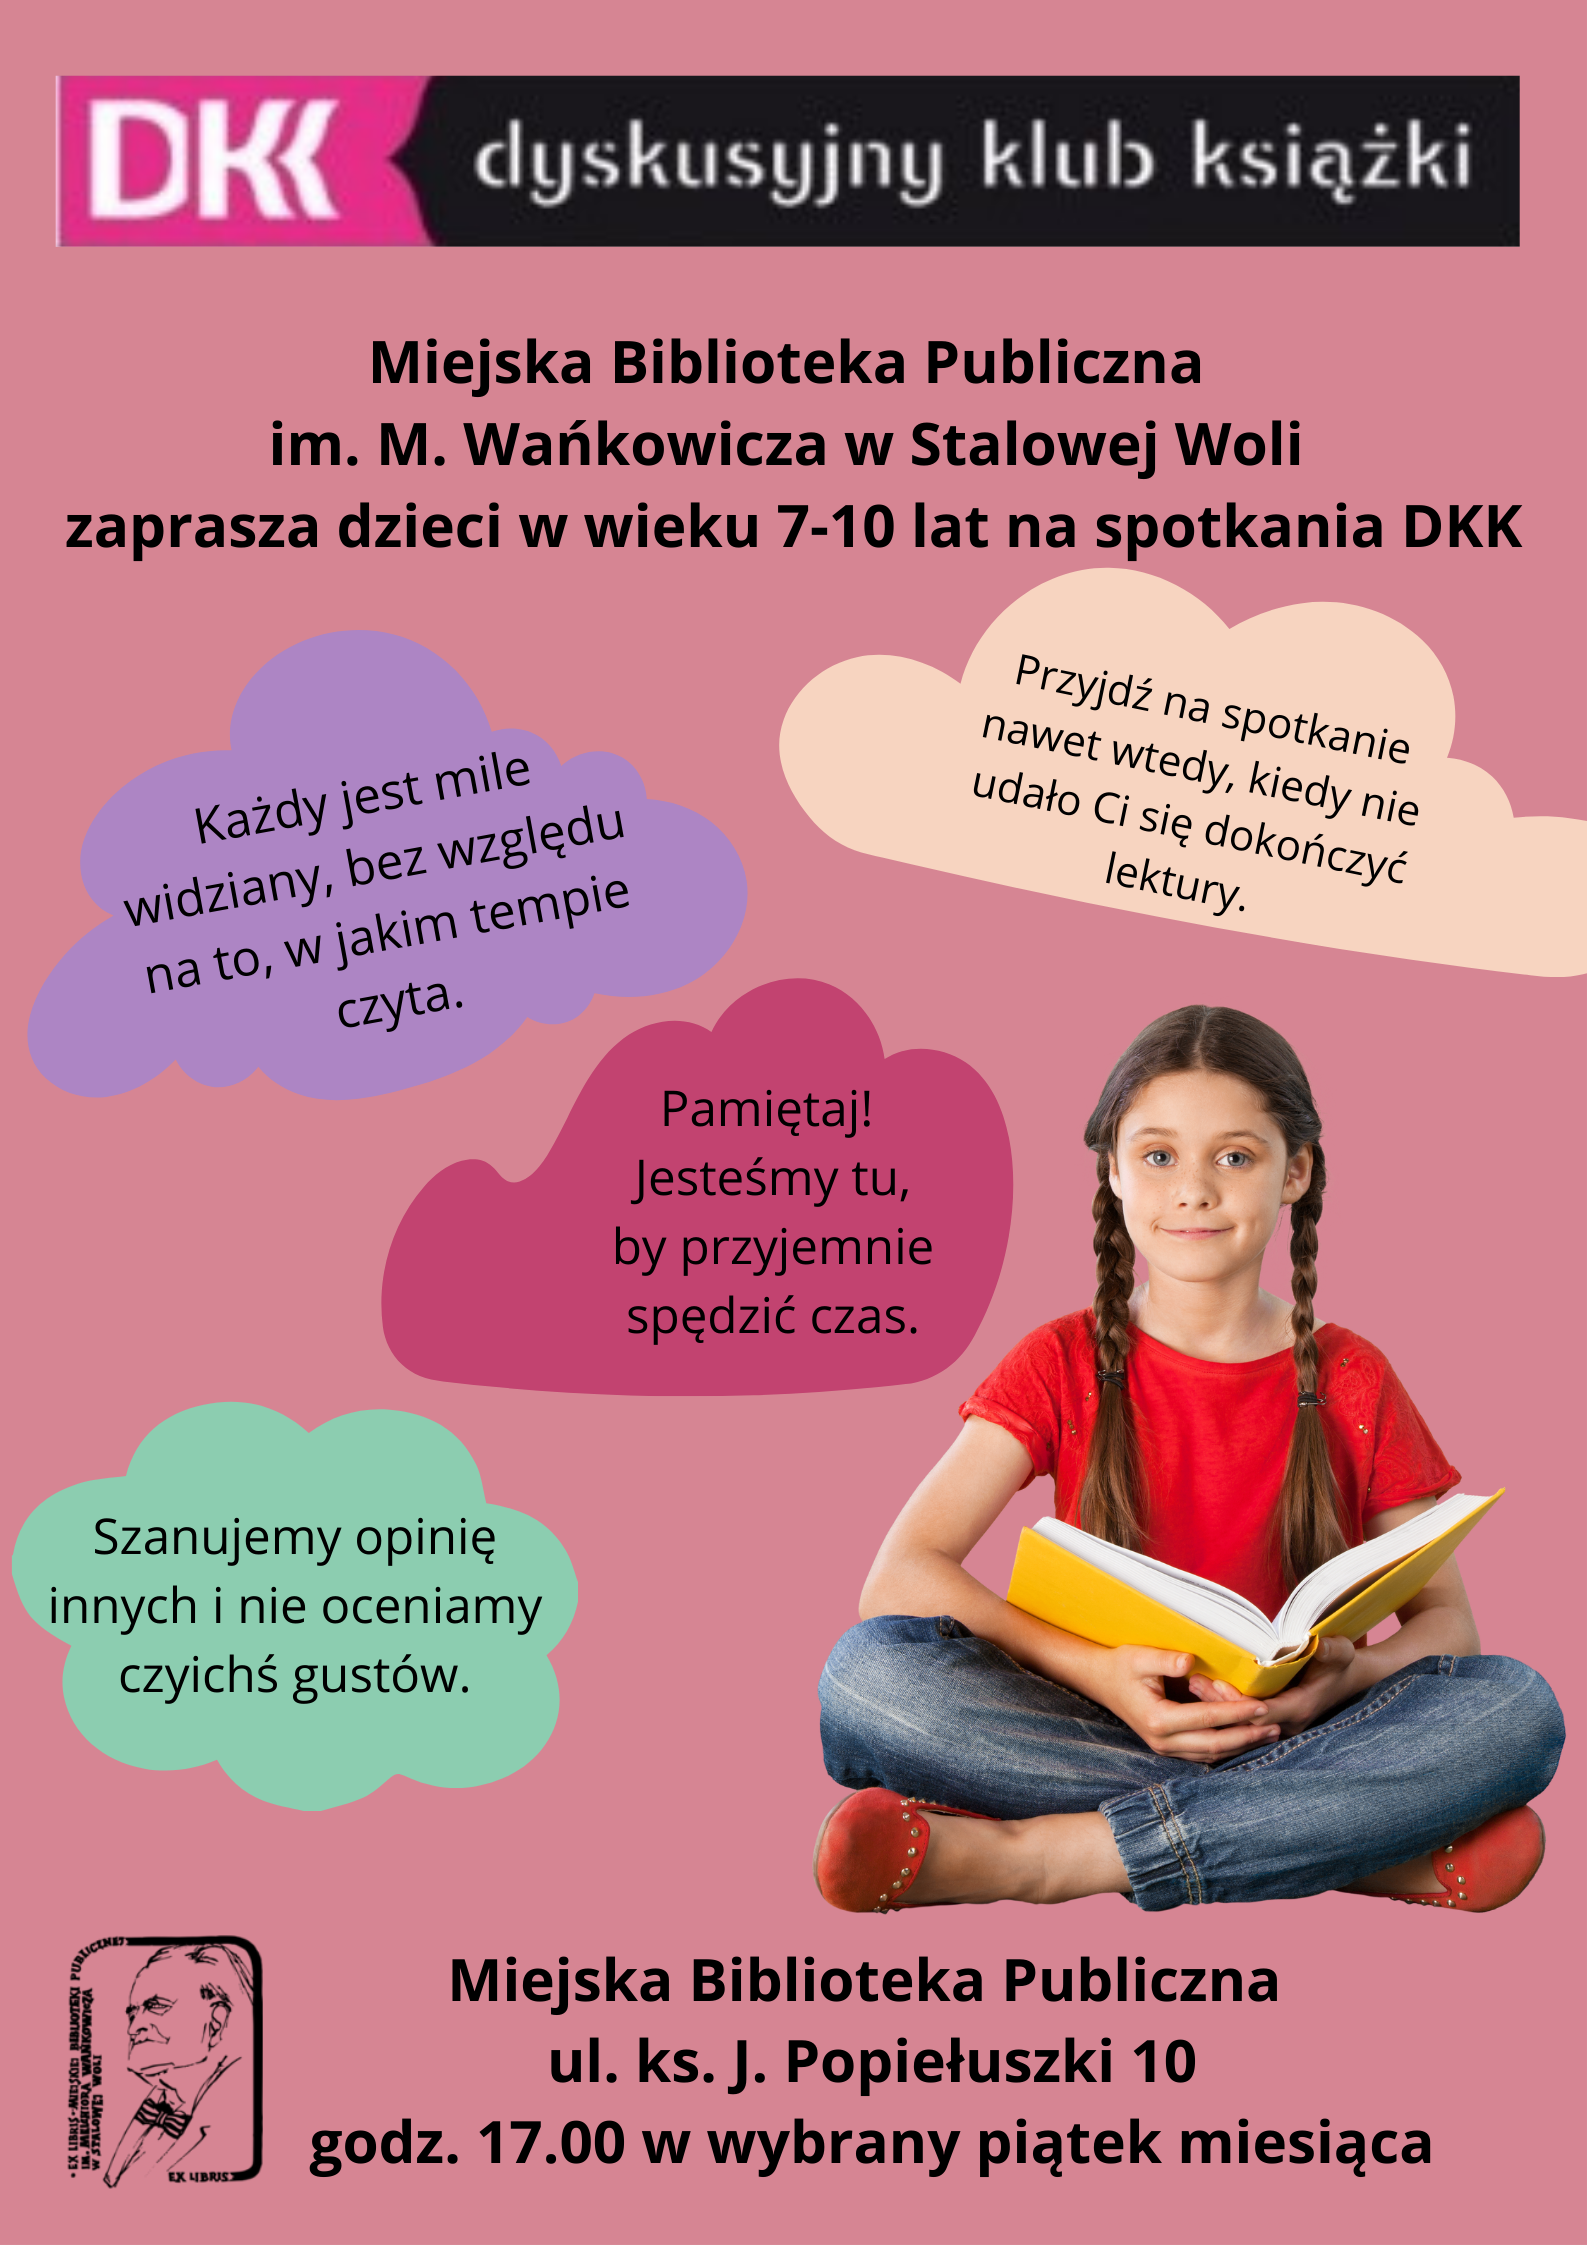 MBP zaprasza dzieci i młodzież do Dyskusyjnego Klubu Książki